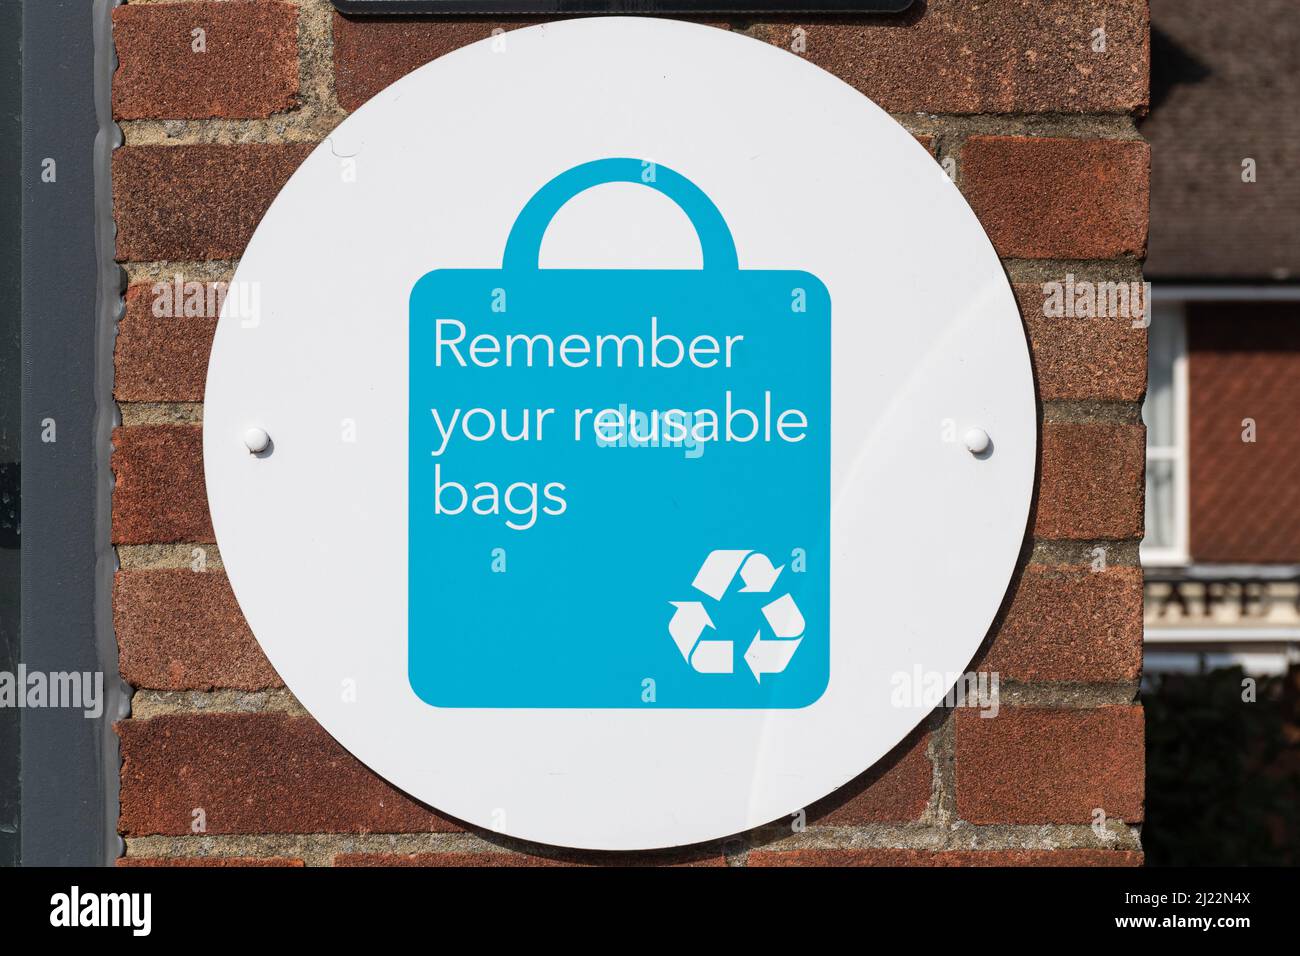 Denken Sie daran, dass Ihre wiederverwendbaren Beutel vor einem Supermarkt in Großbritannien mit Recycling-Symbol gekennzeichnet sind Stockfoto